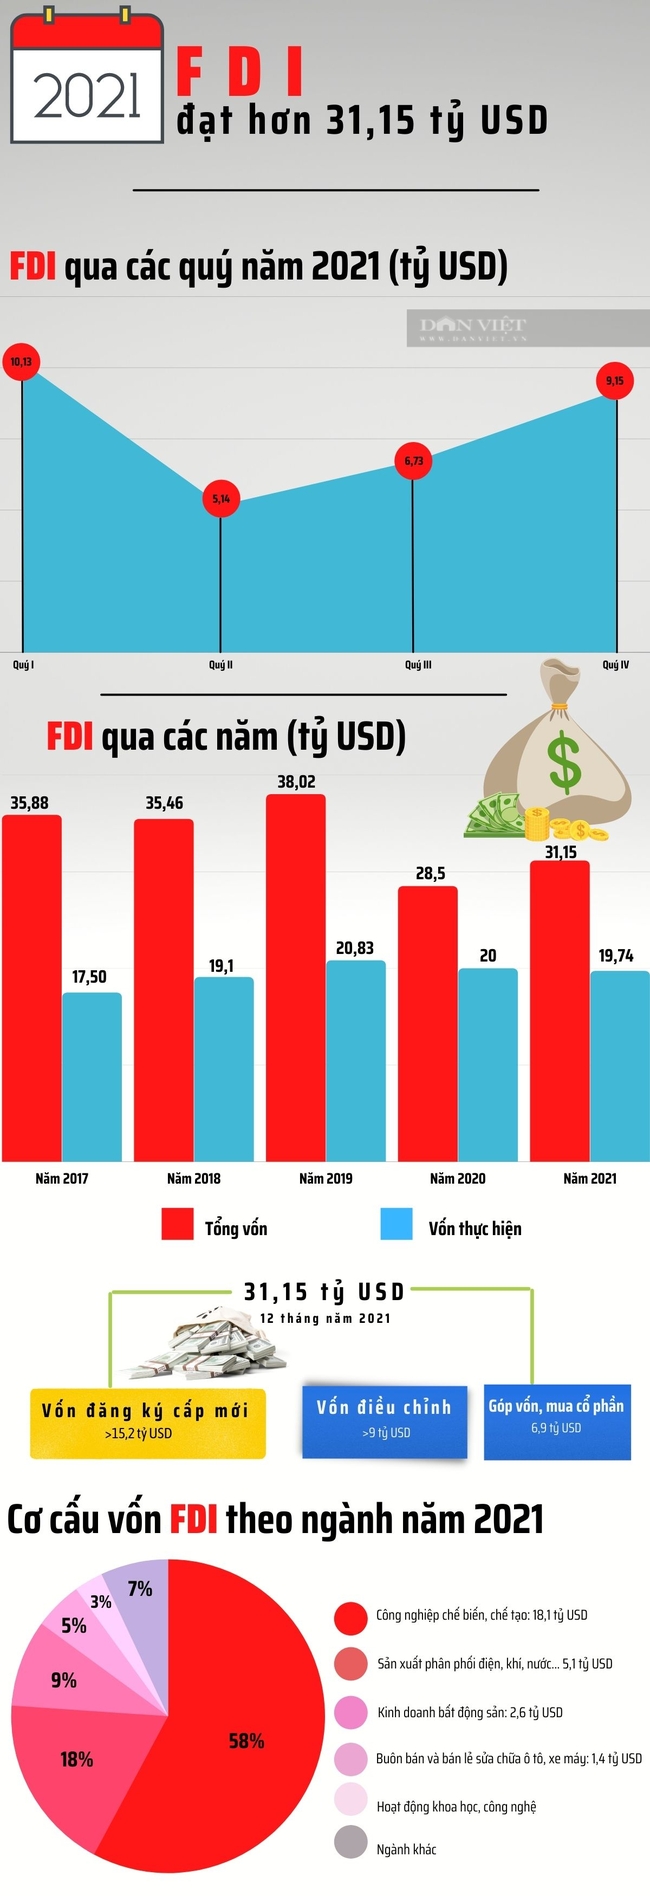 [infographic] Thu hút FDI năm 2021 bứt phá, vượt mốc 31 tỷ USD - Ảnh 1.